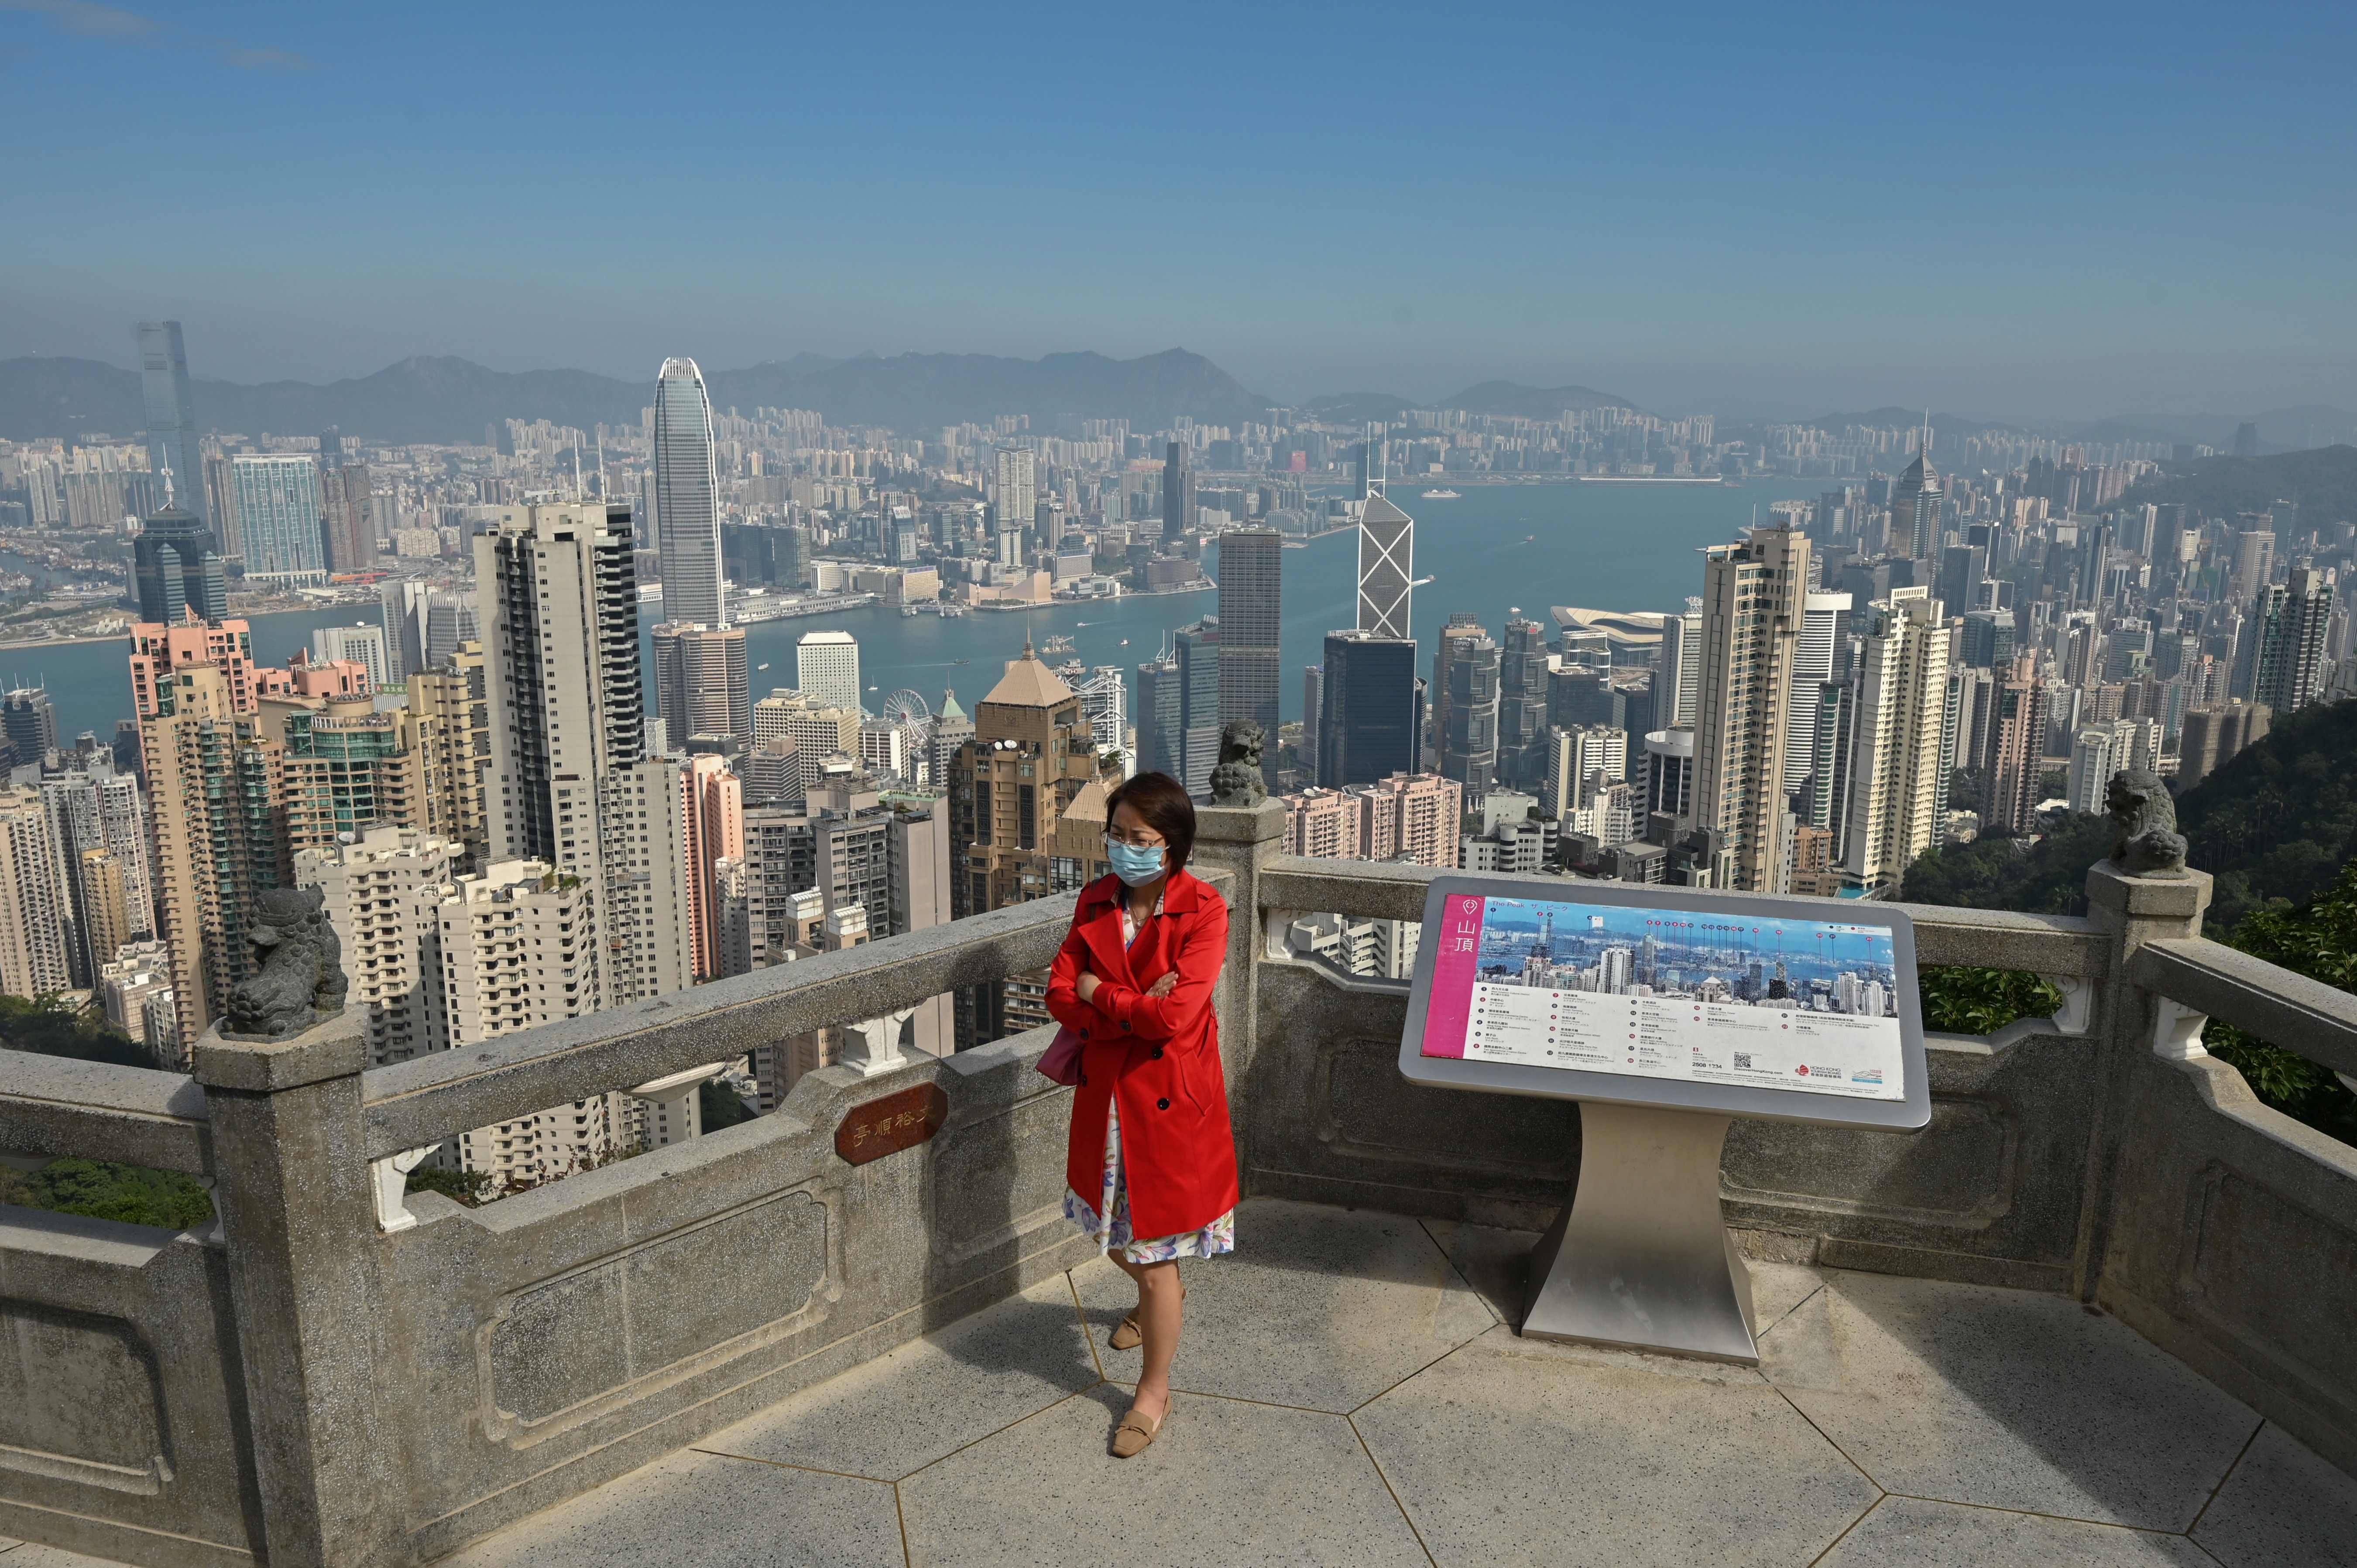 香港曾經是連續25年被評為全球最自由經濟體。（法新社資料圖片）